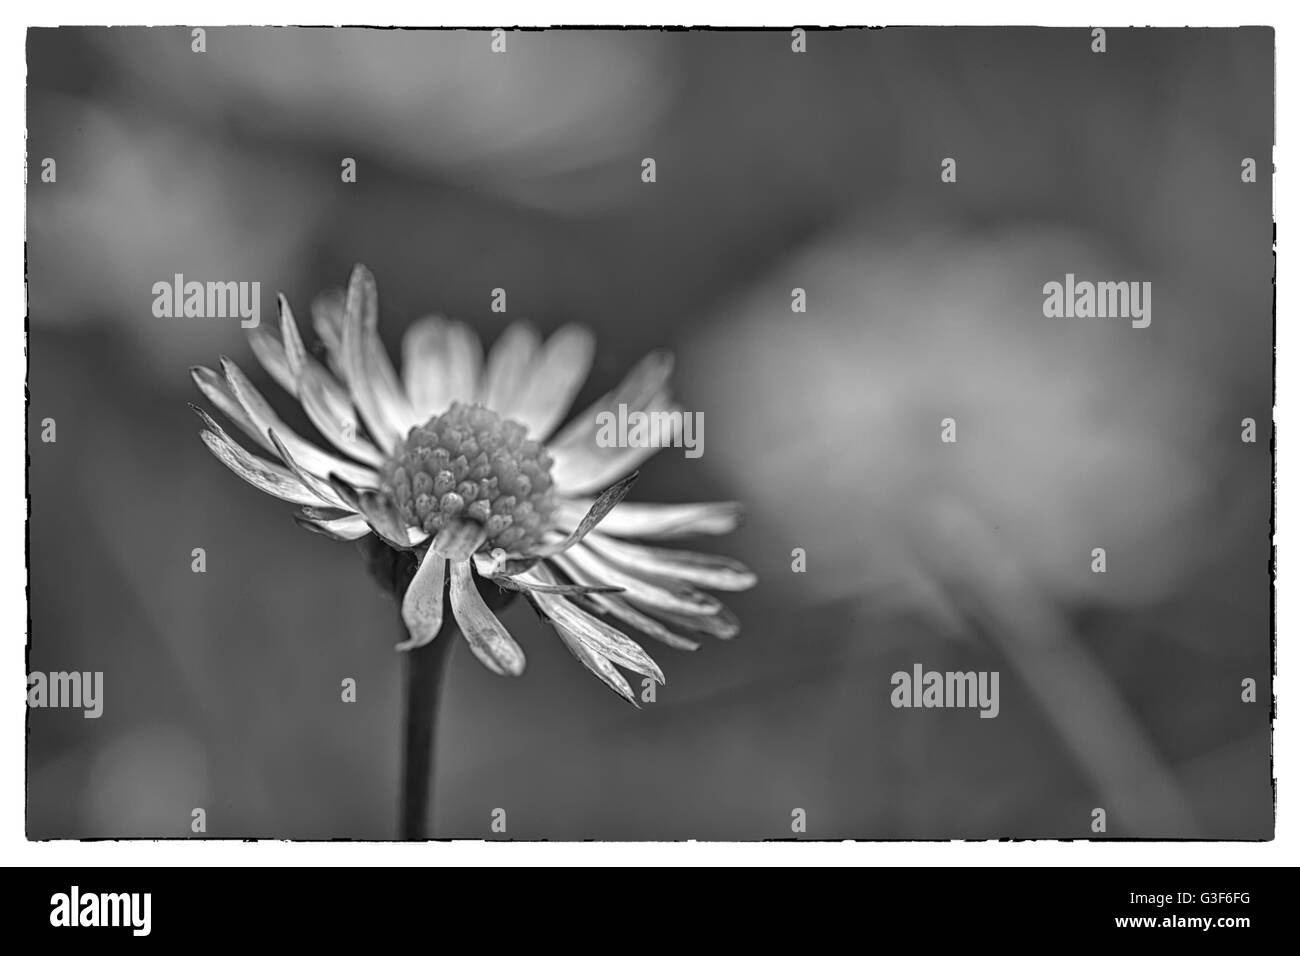 Fleur de printemps macro extrême Daisy tourné dans un champ de marguerites, photo en noir et blanc avec une frontière Vintage Banque D'Images